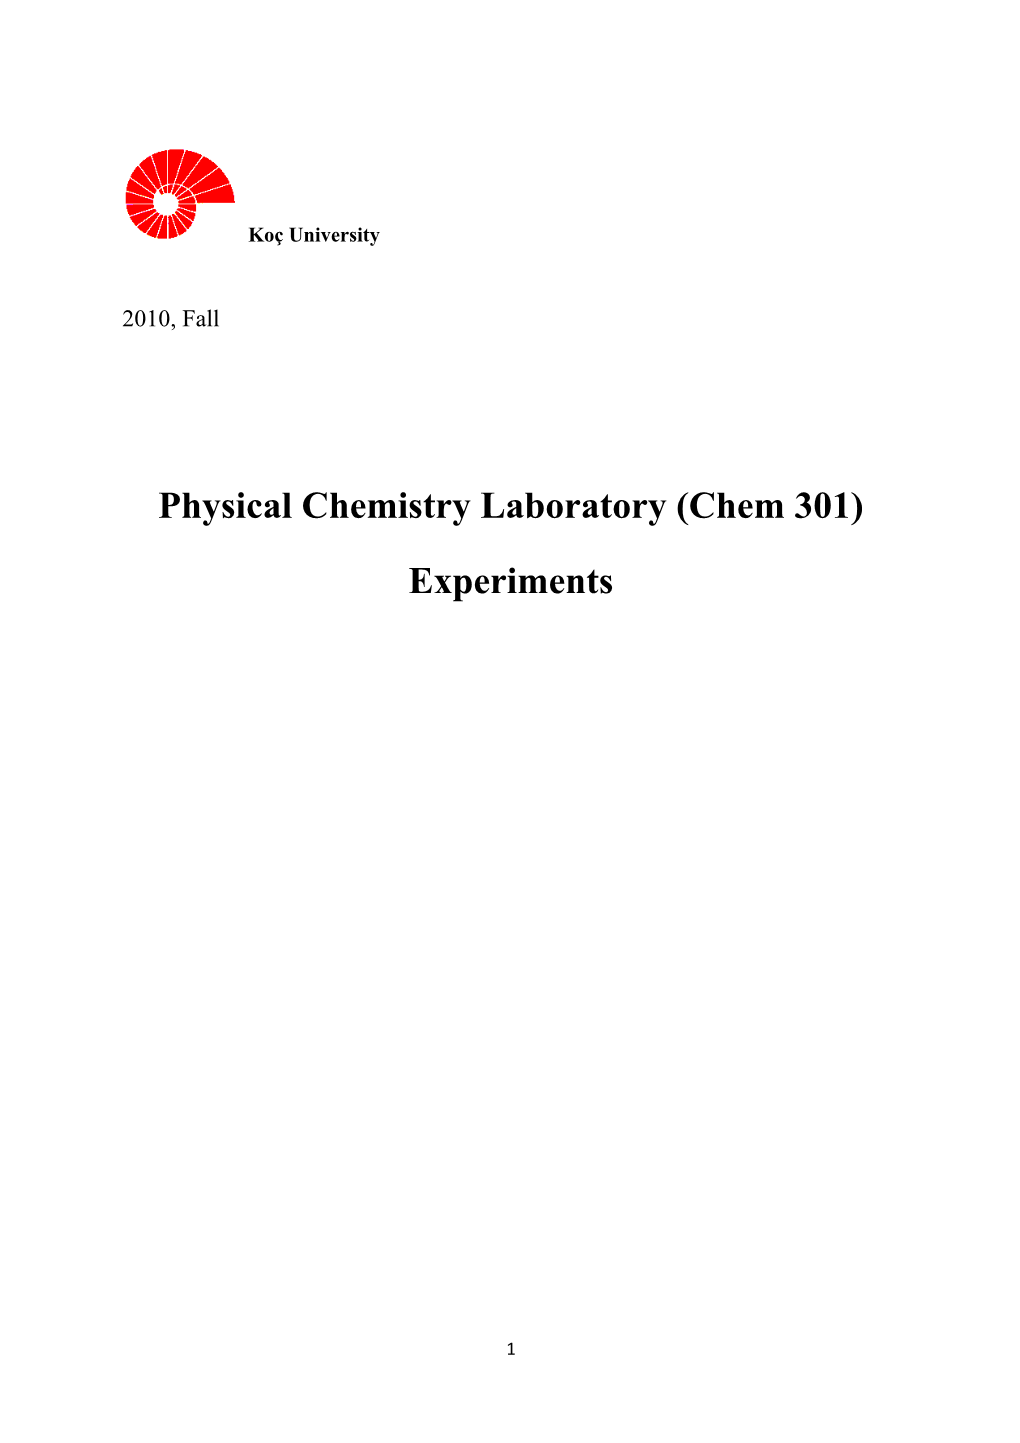 Physical Chemistry Laboratory (Chem 301)